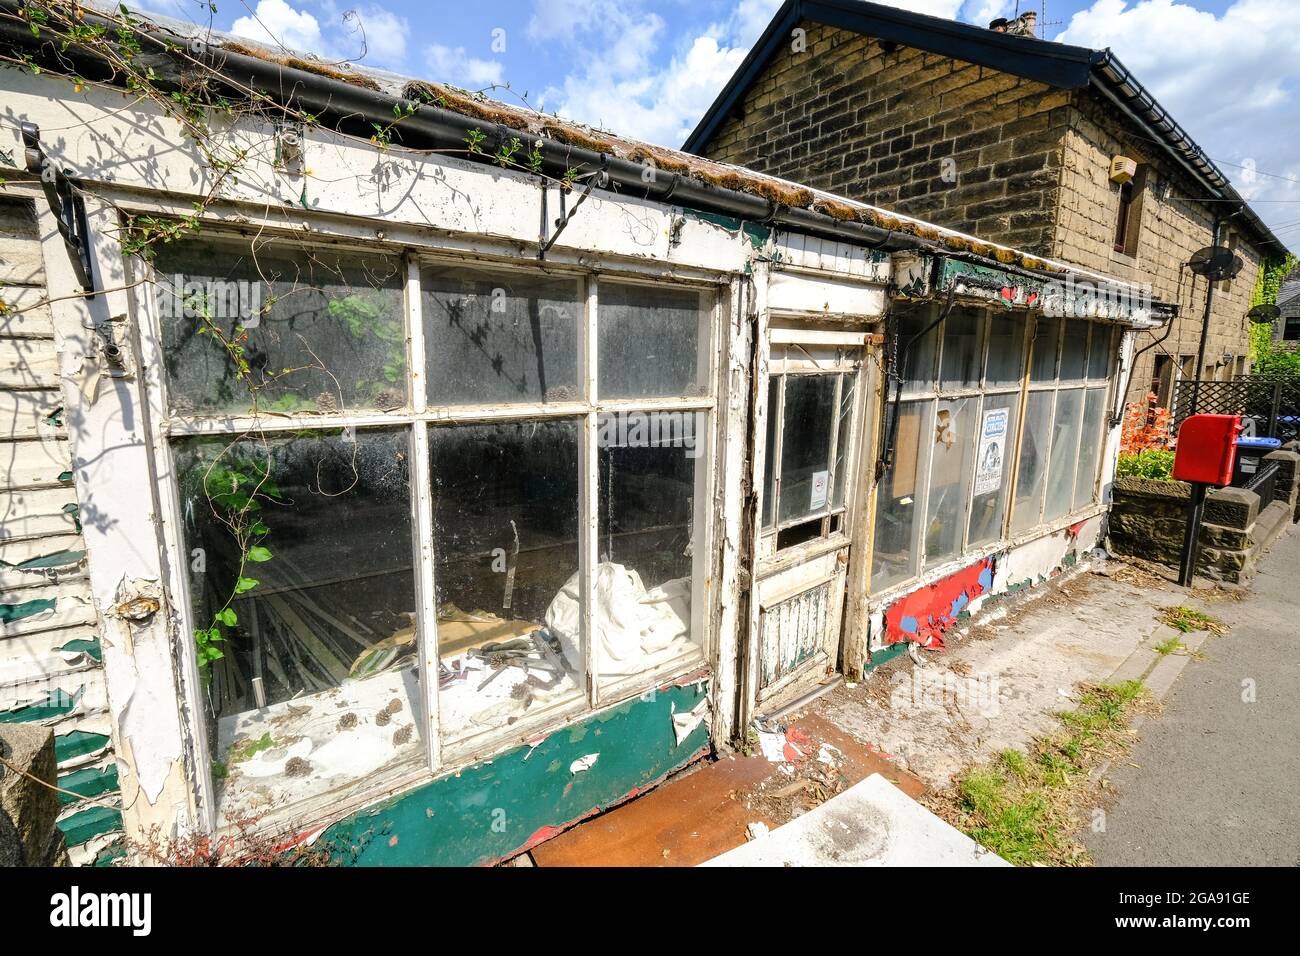 Un magasin de façade abandonné dans le village de Stoney Middleton dans le Derbyshire. Les fenêtres cassées, les cadres en décomposition et la peinture écaillée présentent une triste image d'un emplacement. Banque D'Images